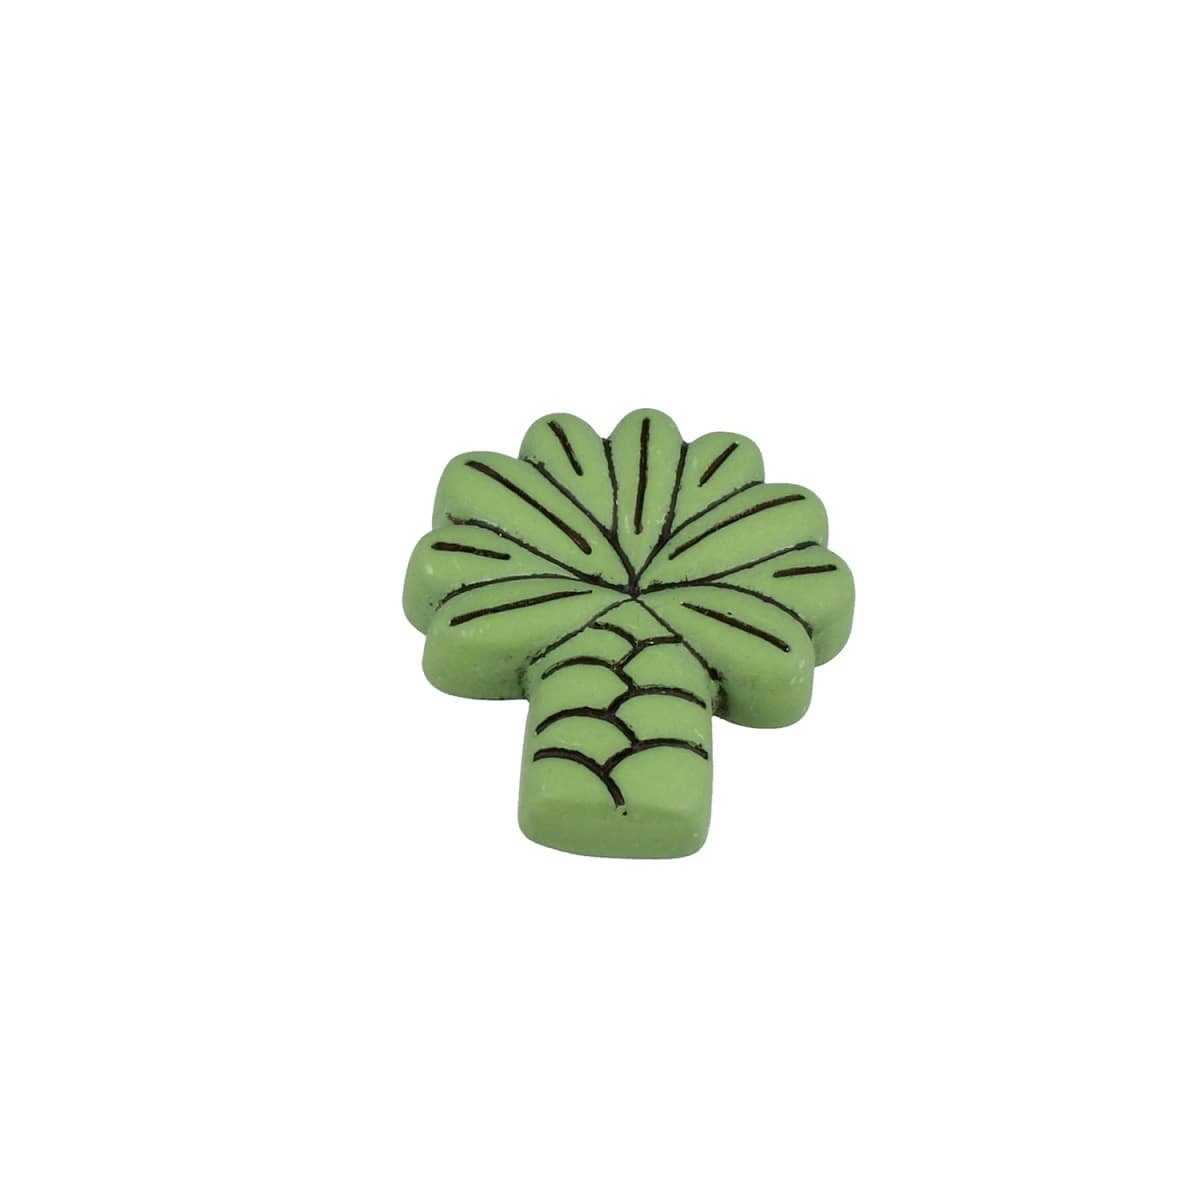 MS Beschläge Möbelbeschlag Möbelknopf Schrankknopf Kindermöbelknopf Modell Grüne Palme Kommodenkn